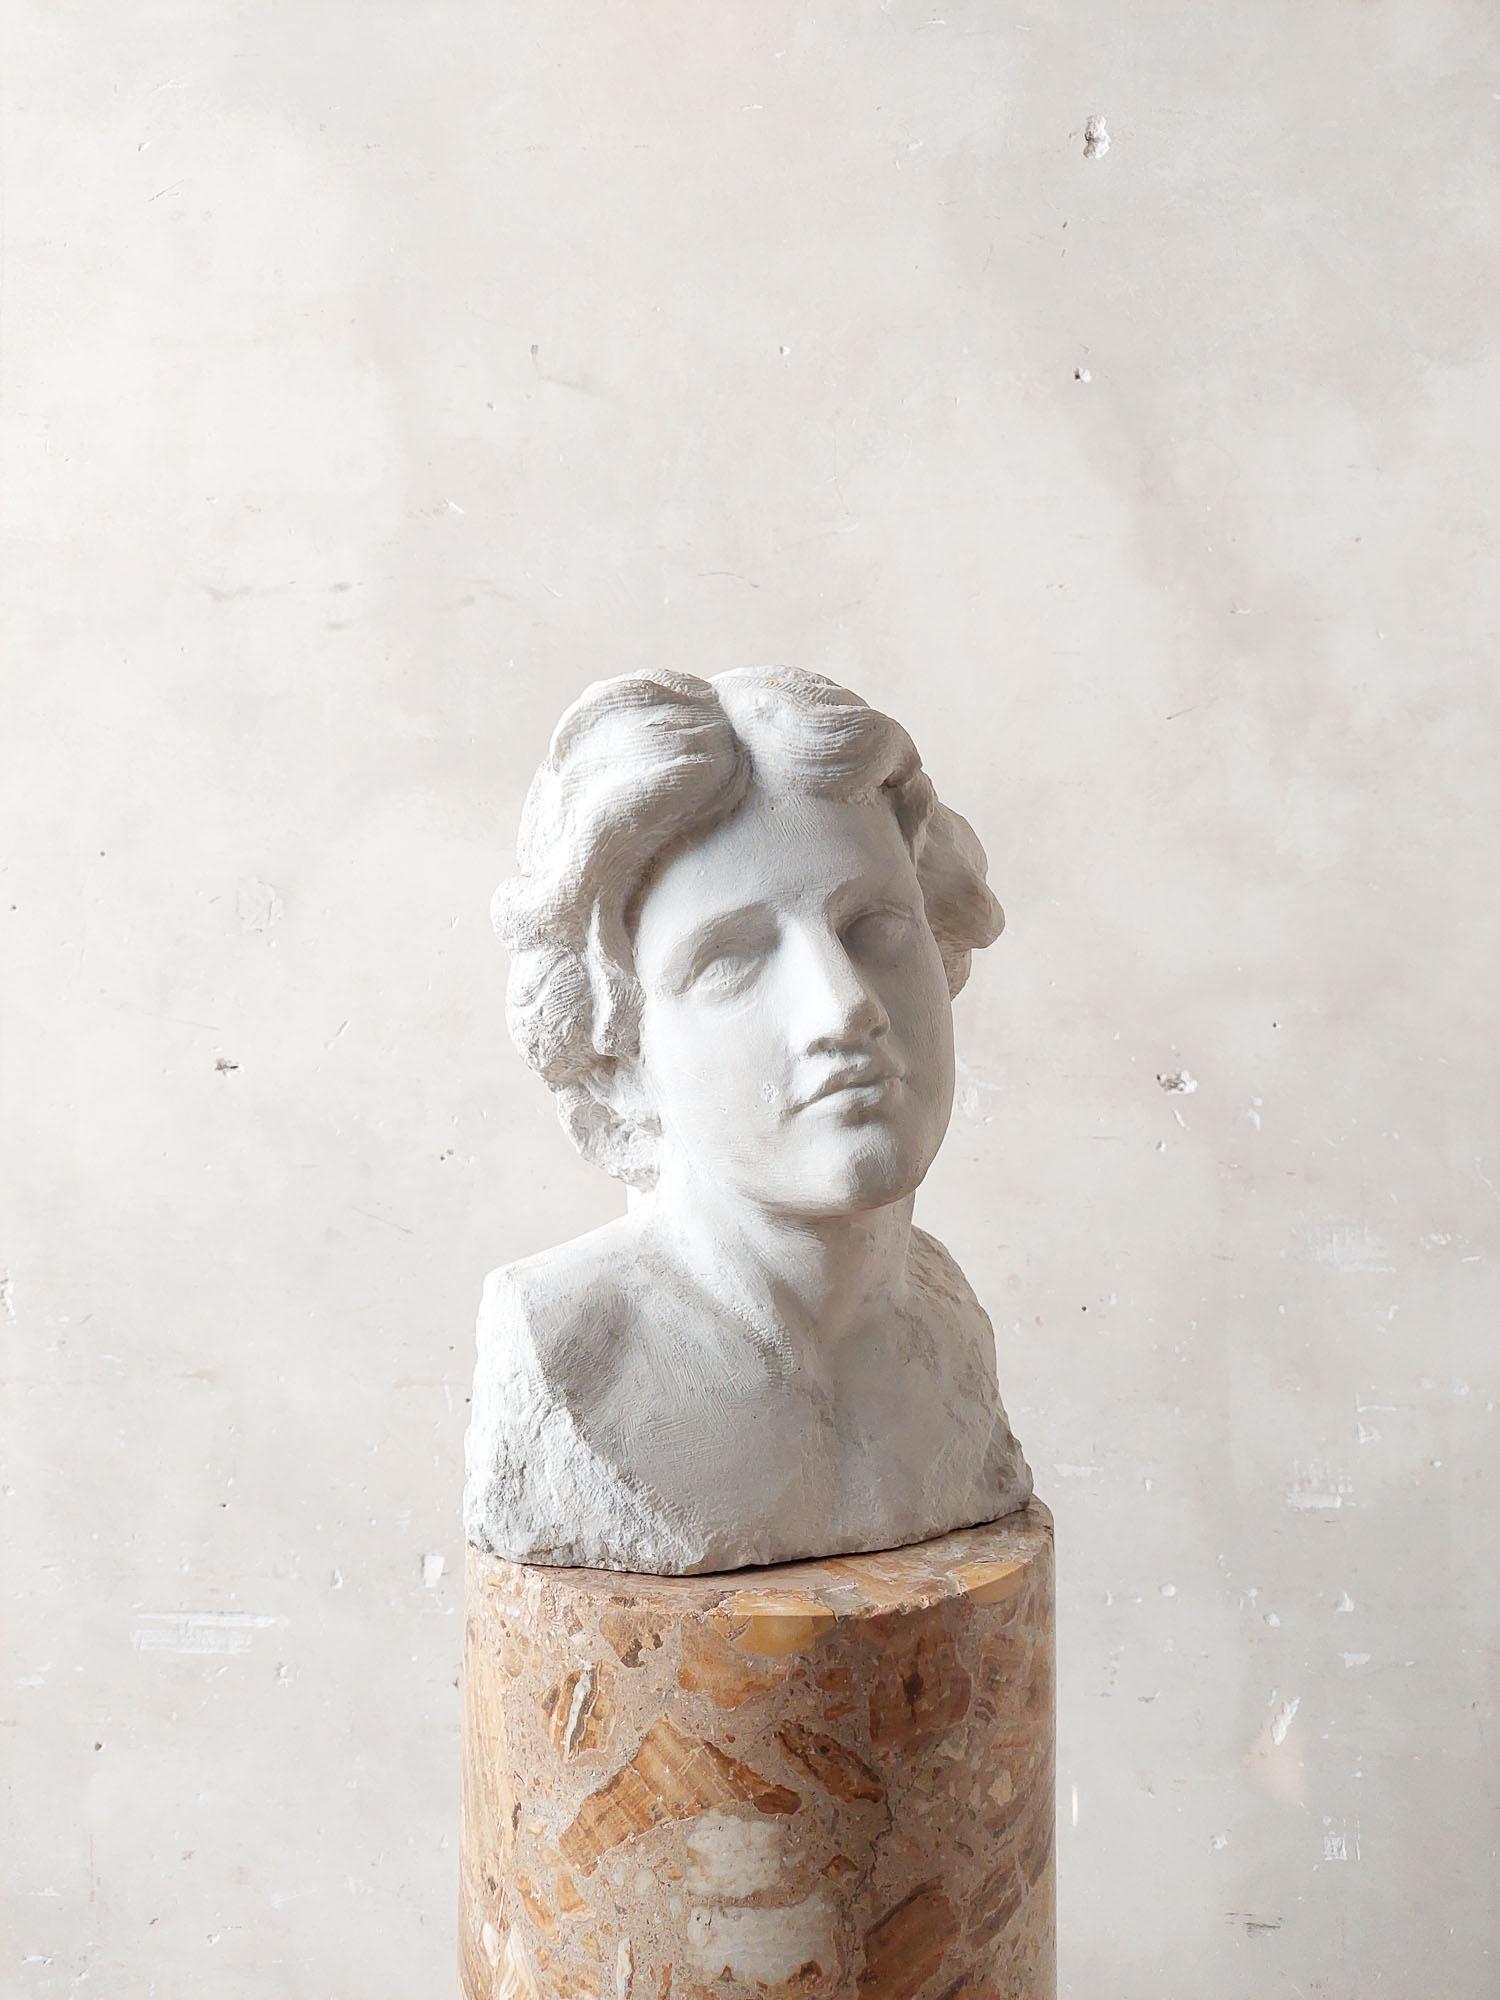 Buste antique en marbre de carrare sculpté à la main en marbre blanc de qualité statuaire.

h 47 x l 32 x p 29 cm